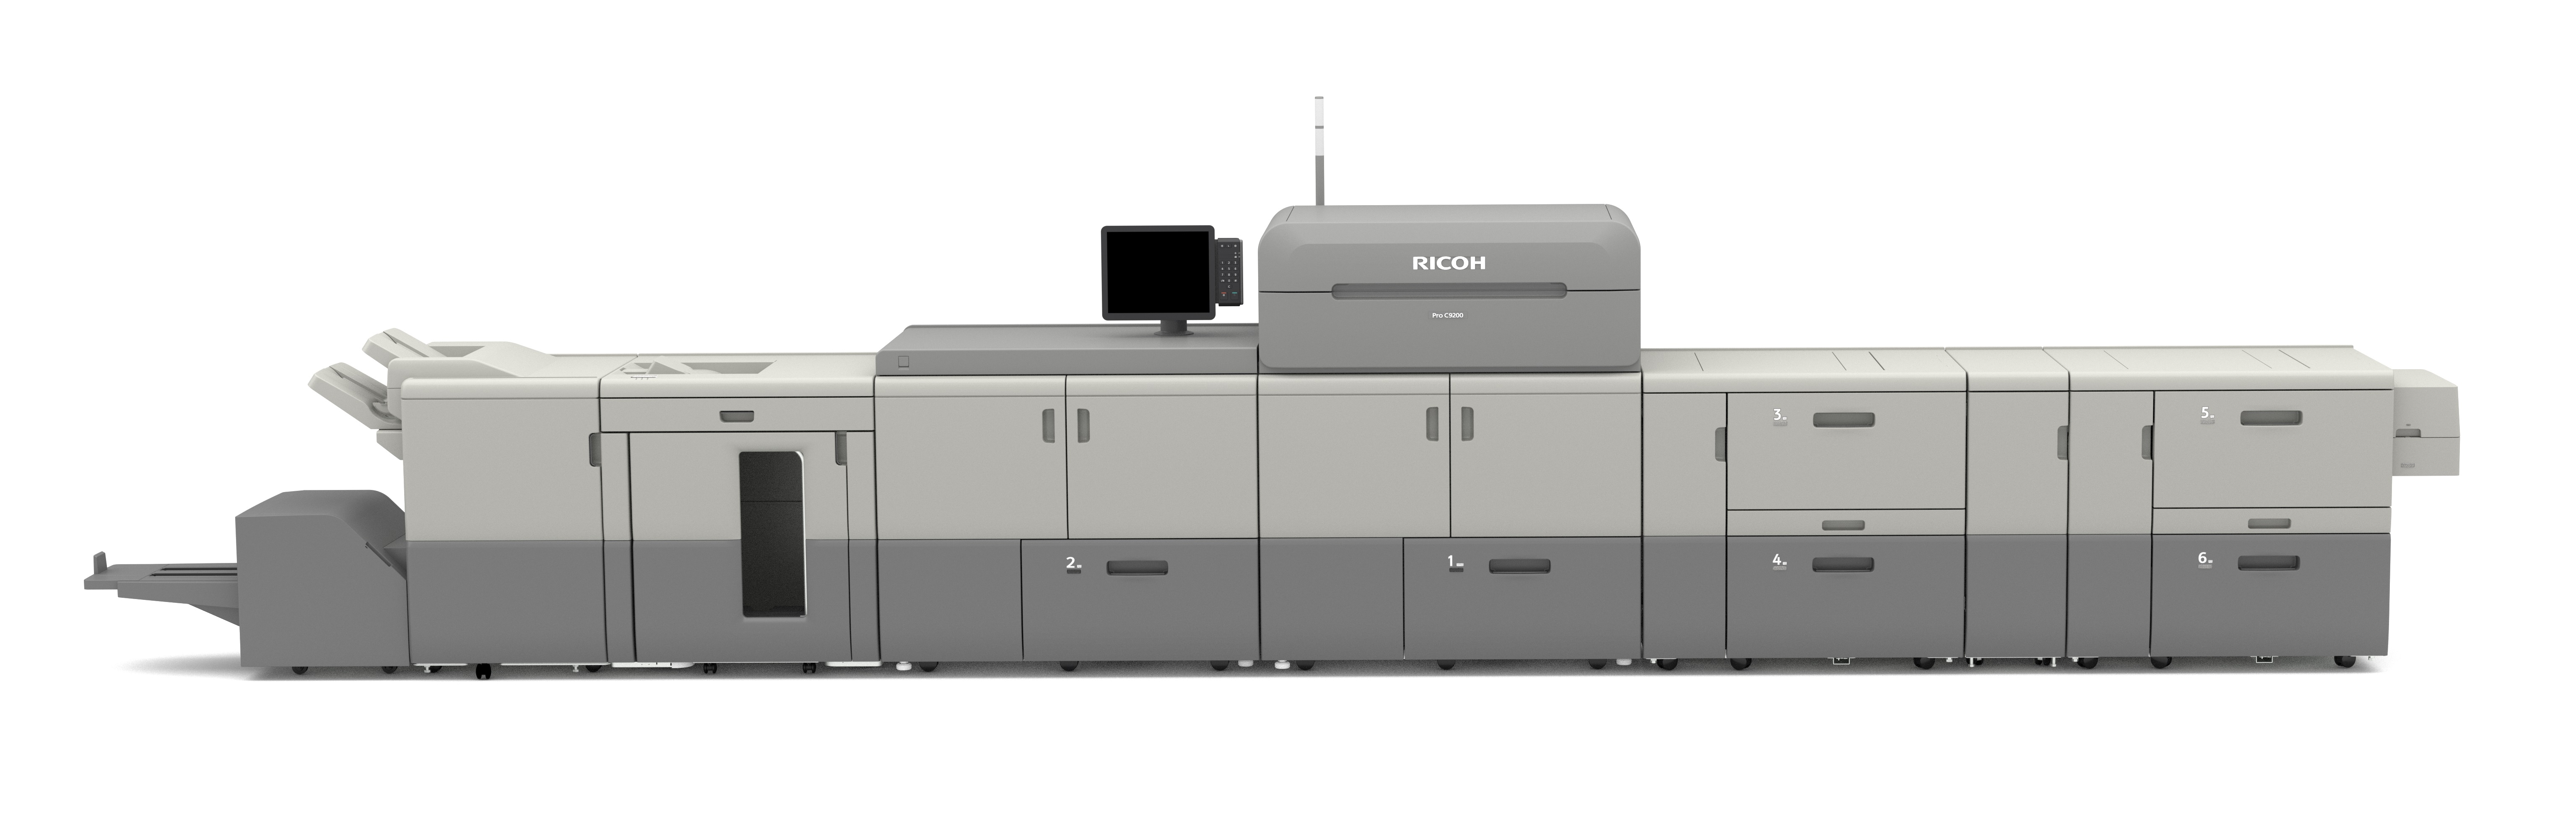 Smithers Pira bestätigt Lebensmittelsicherheit der Pro-Print-Toner für die digitalen Einzelblatt-Farbdrucksysteme von Ricoh